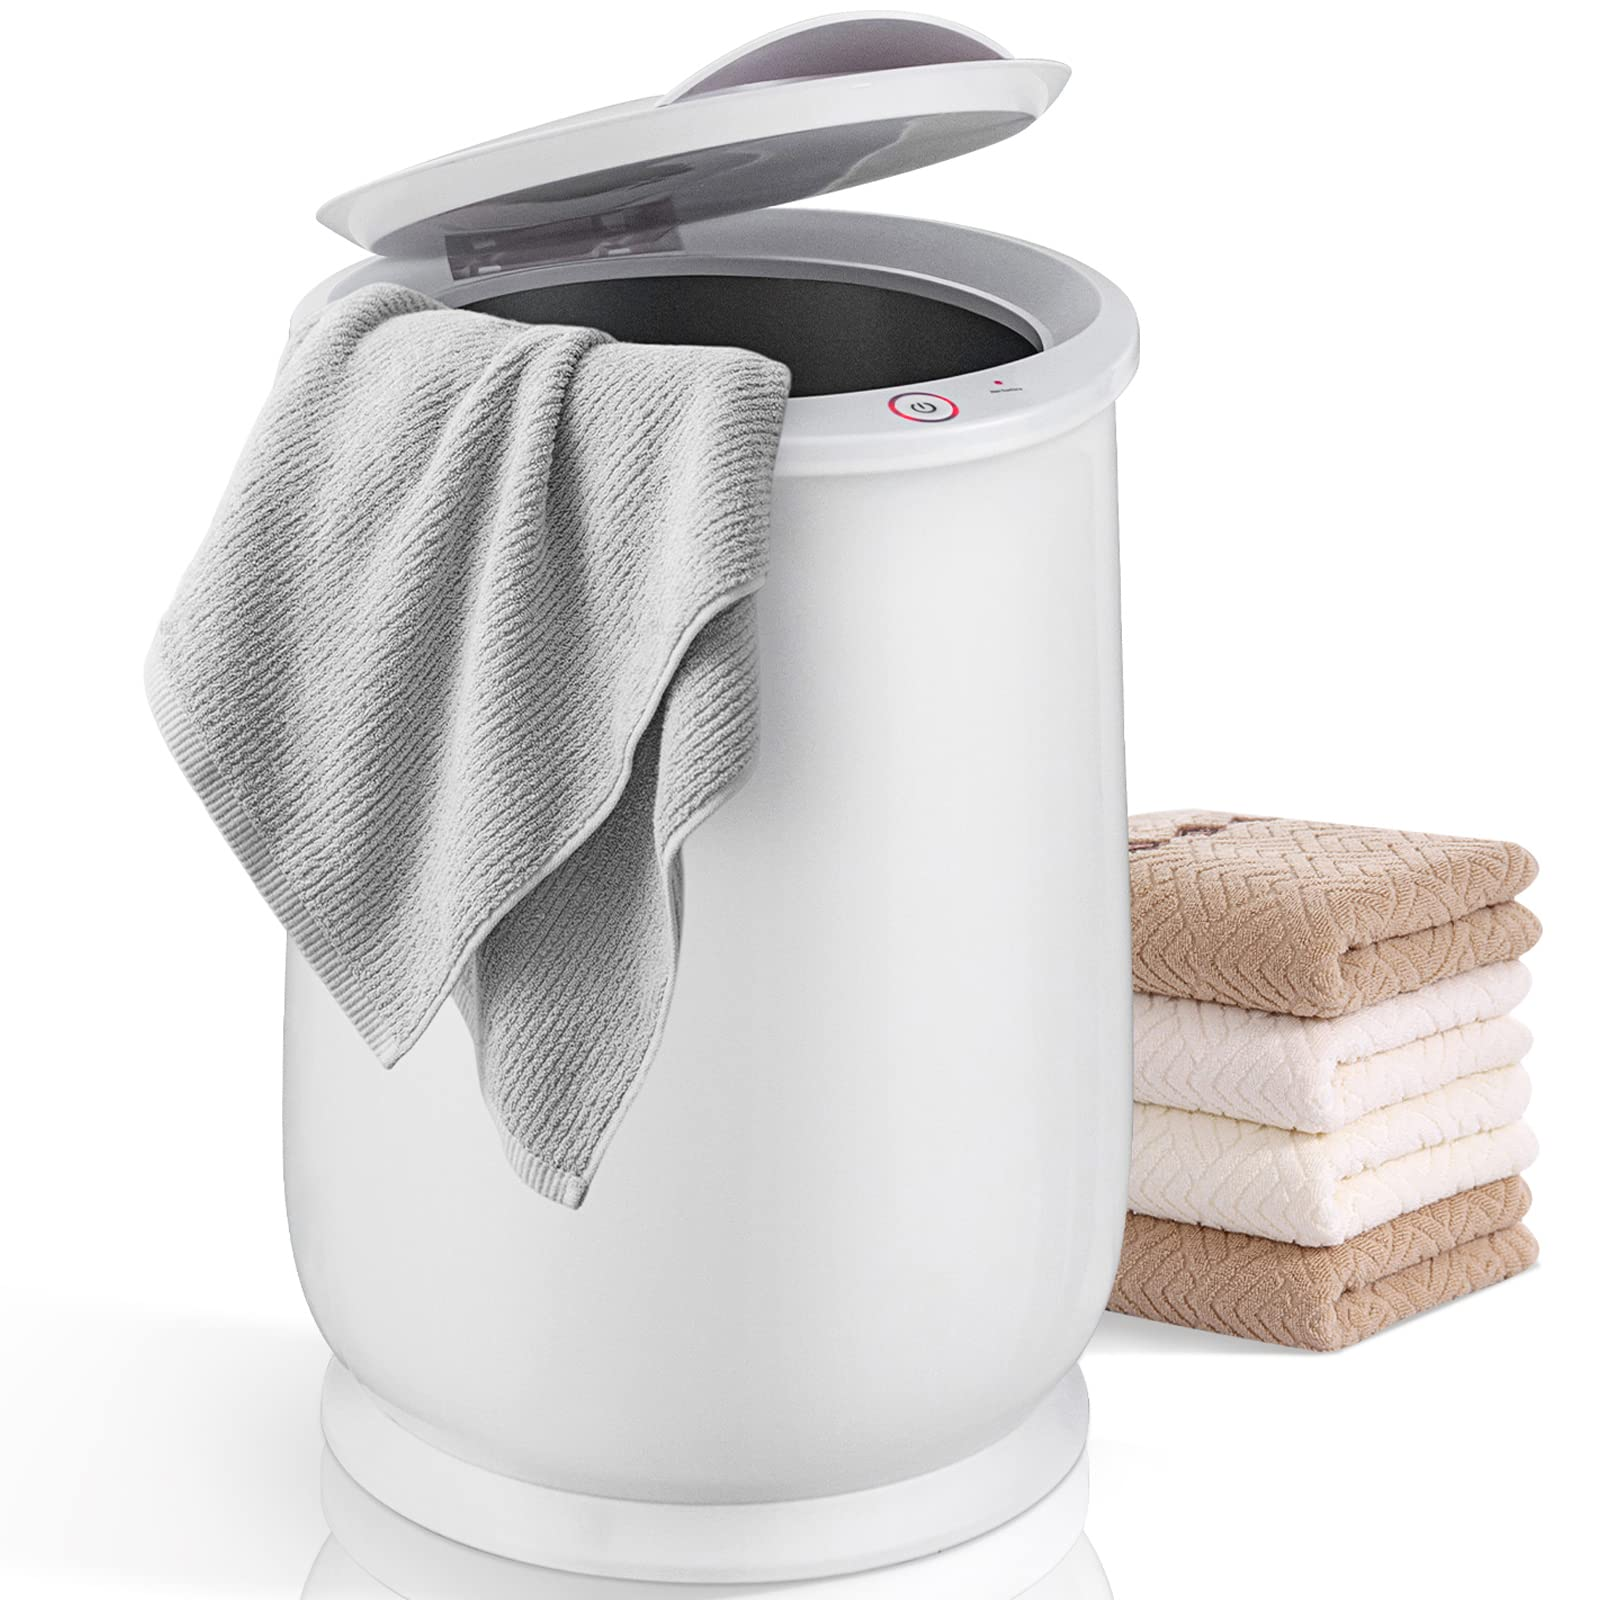 Giantex Towel Warmer Bucket for Bathroom, 21 L